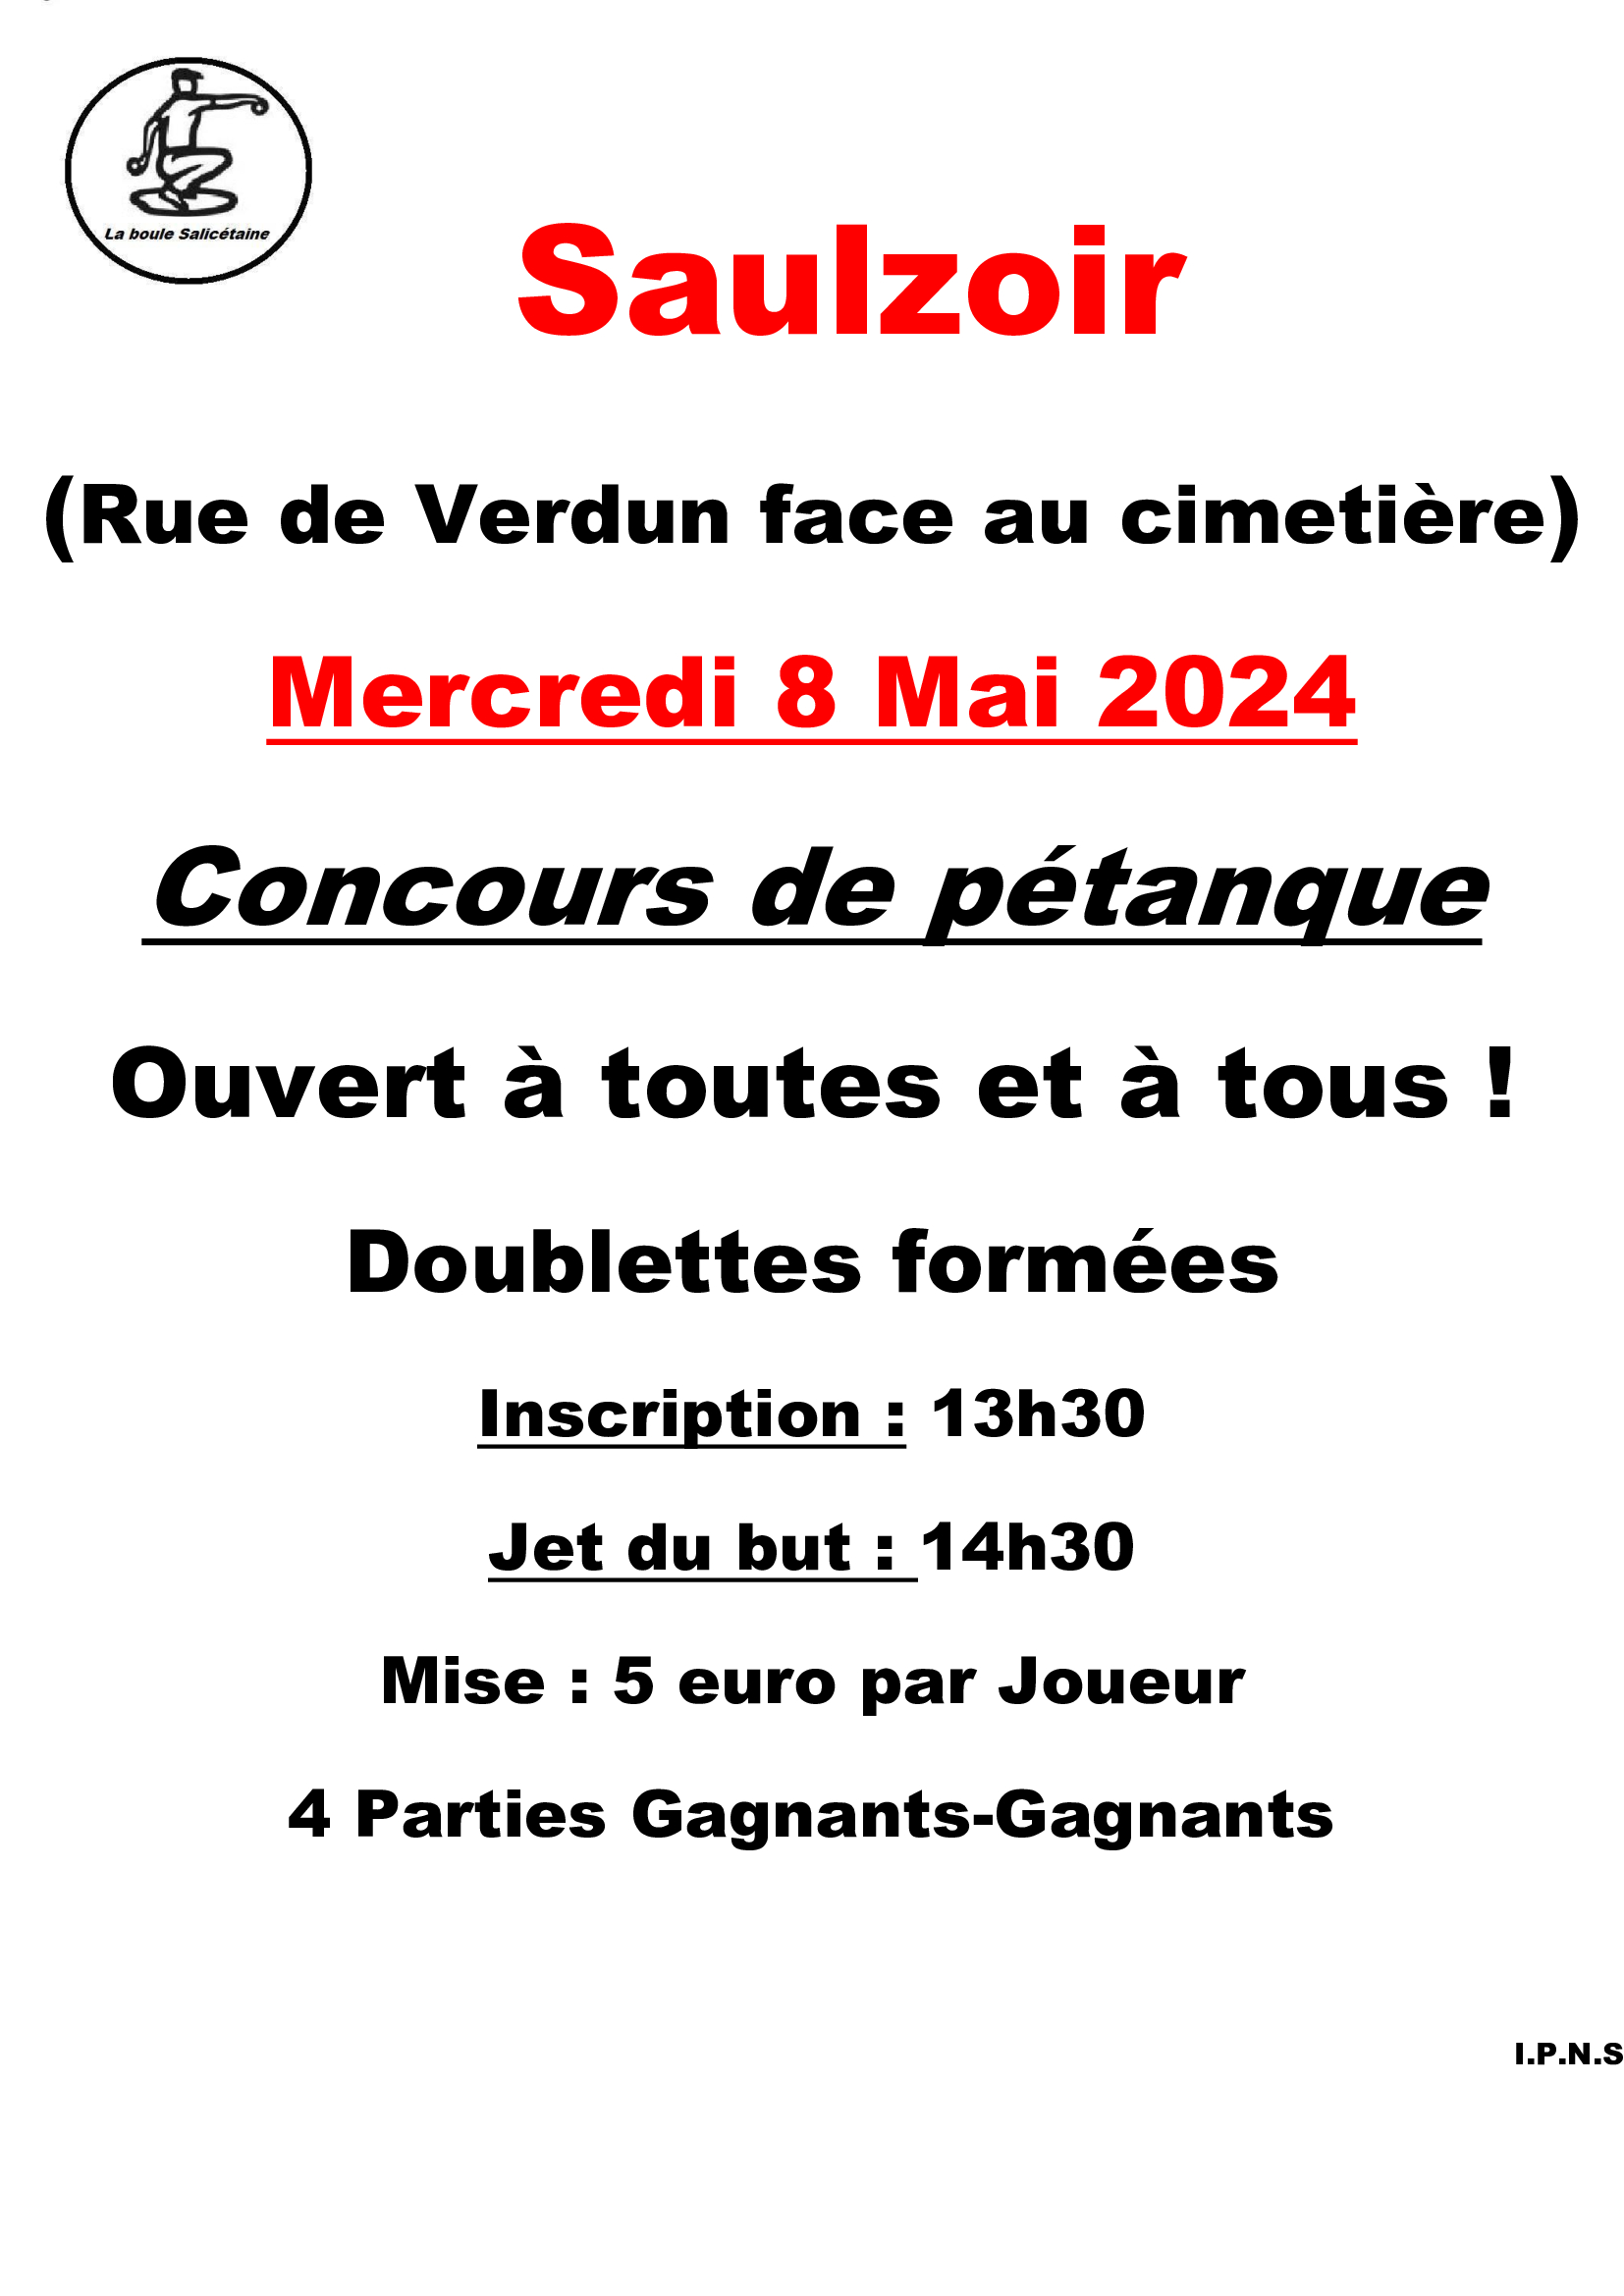 Concours en Doublette le 8 mai 2024 - Saulzoir - 59227